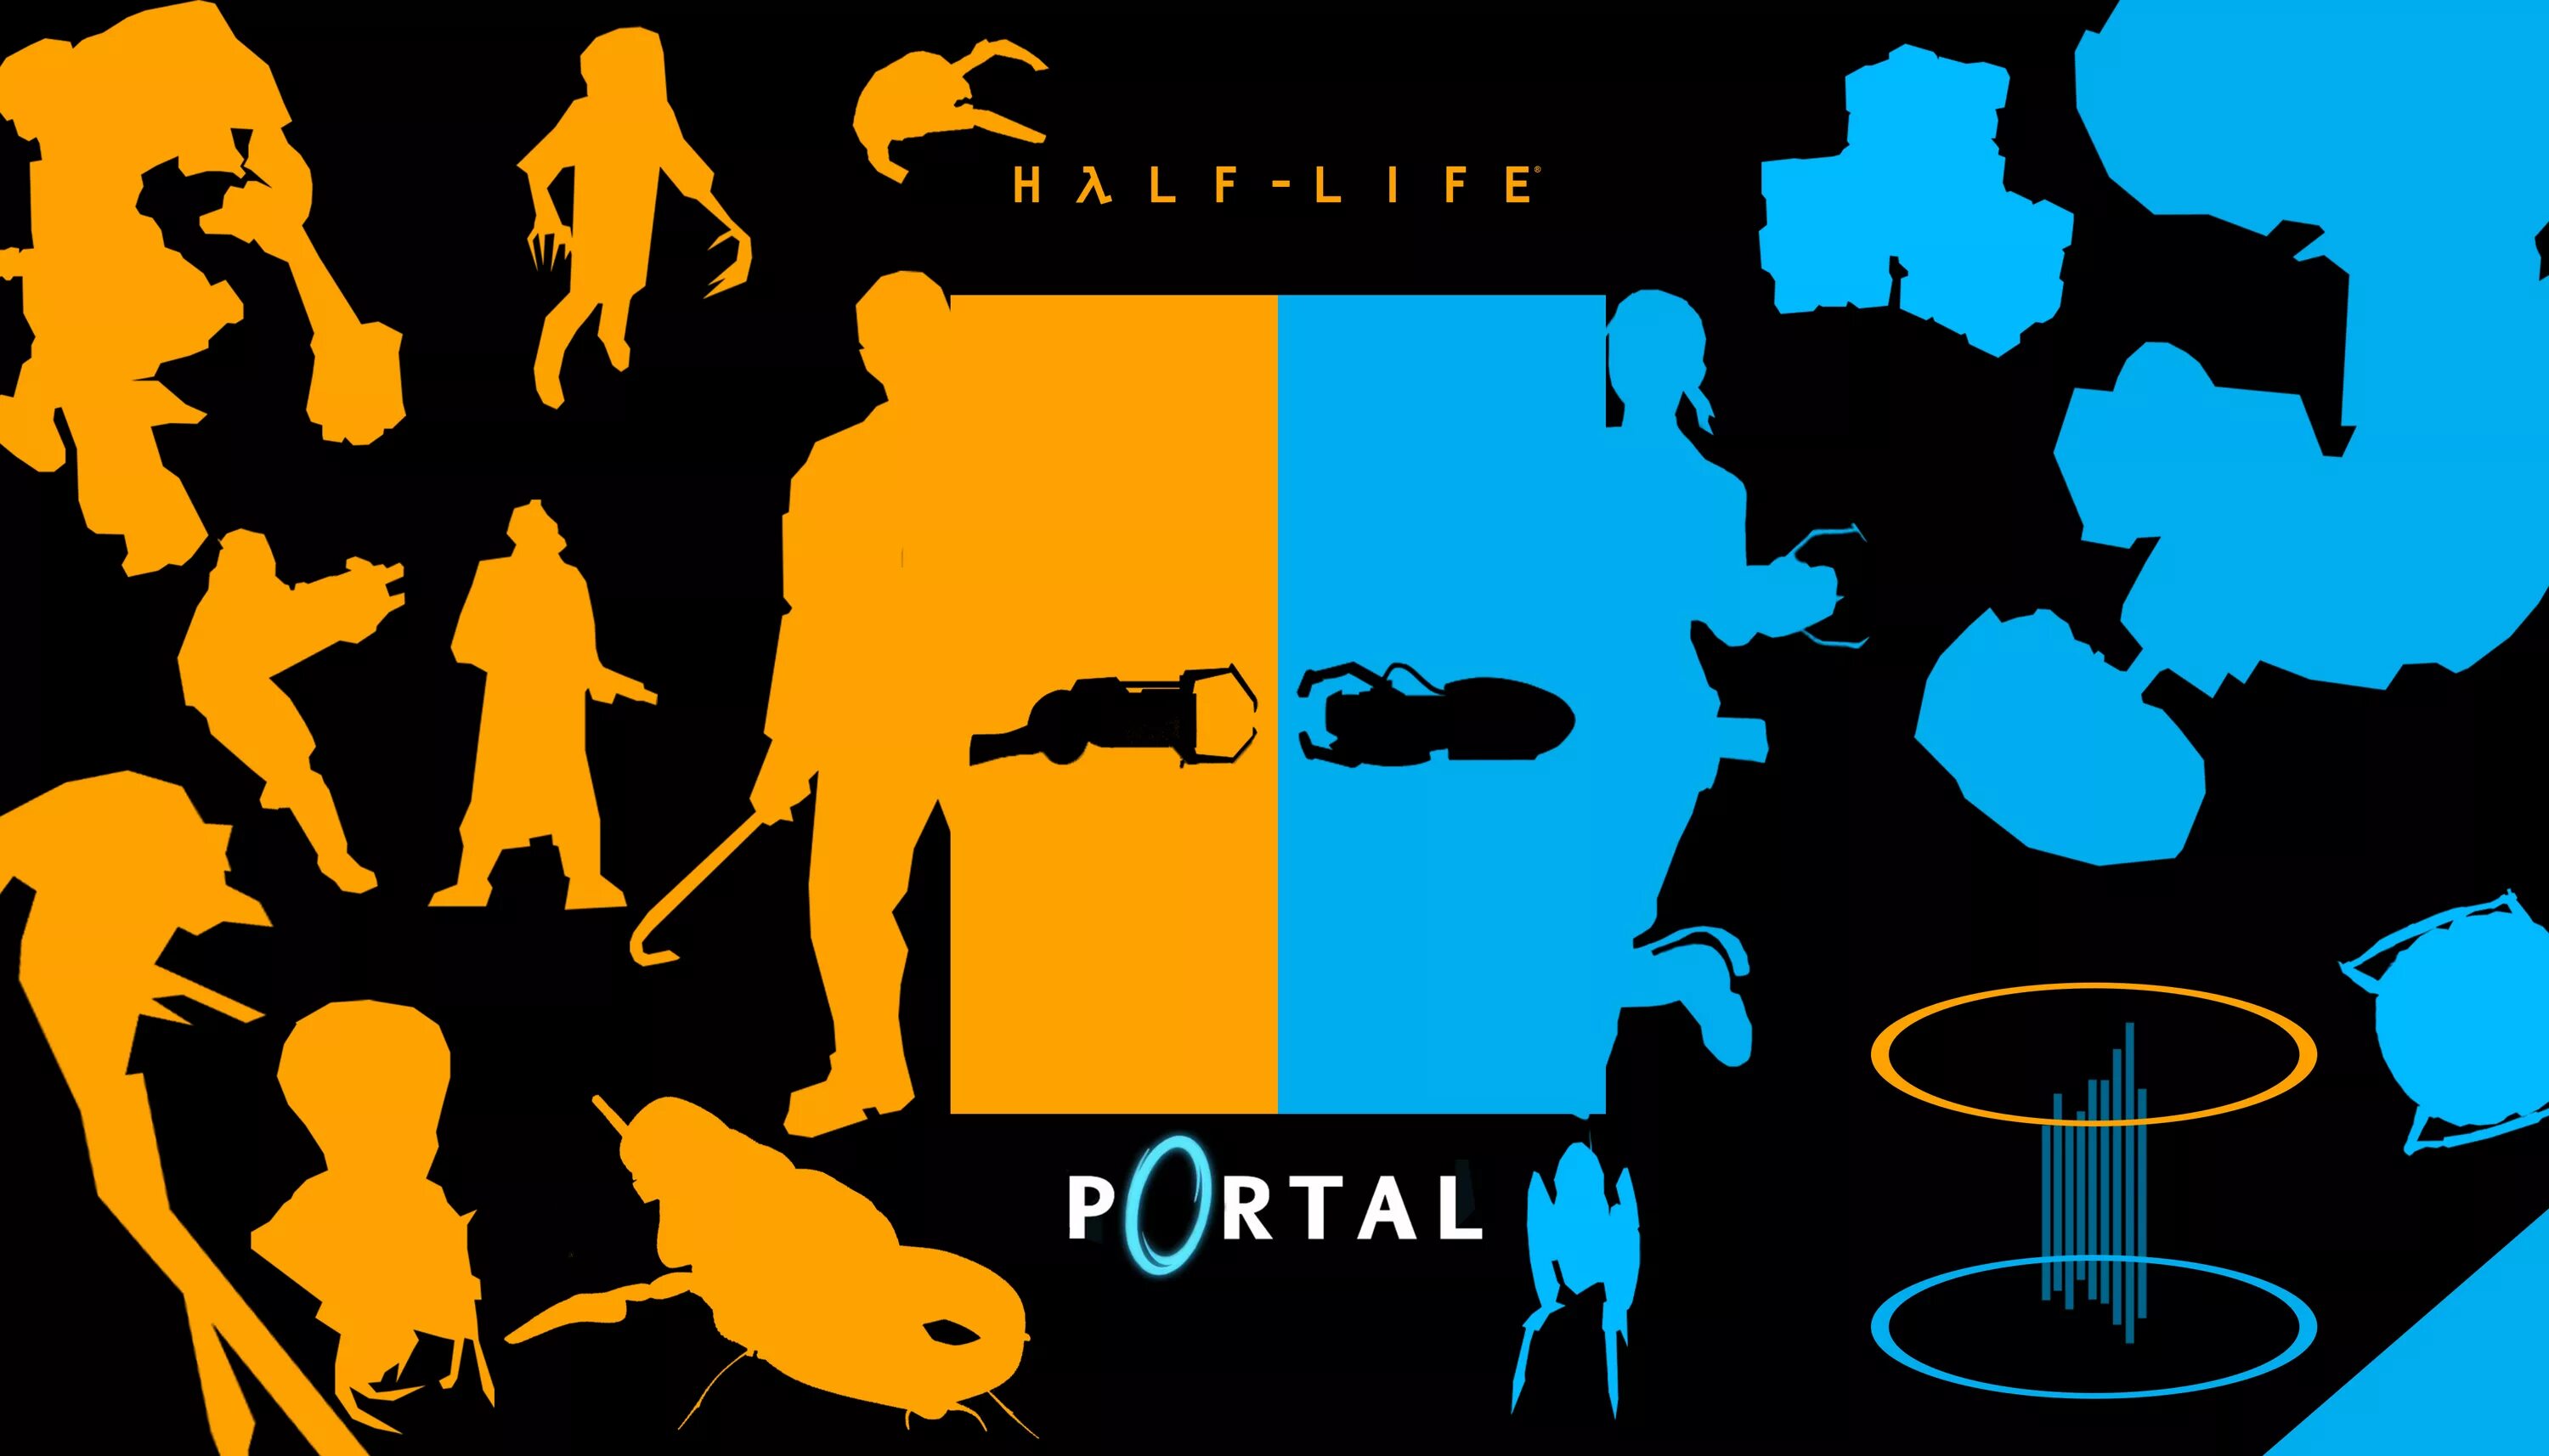 Half life portal. Half Life 2 Portal. Халф лайф 2 и портал. Half Life 2 портал. Portal 2 и half Life 2.